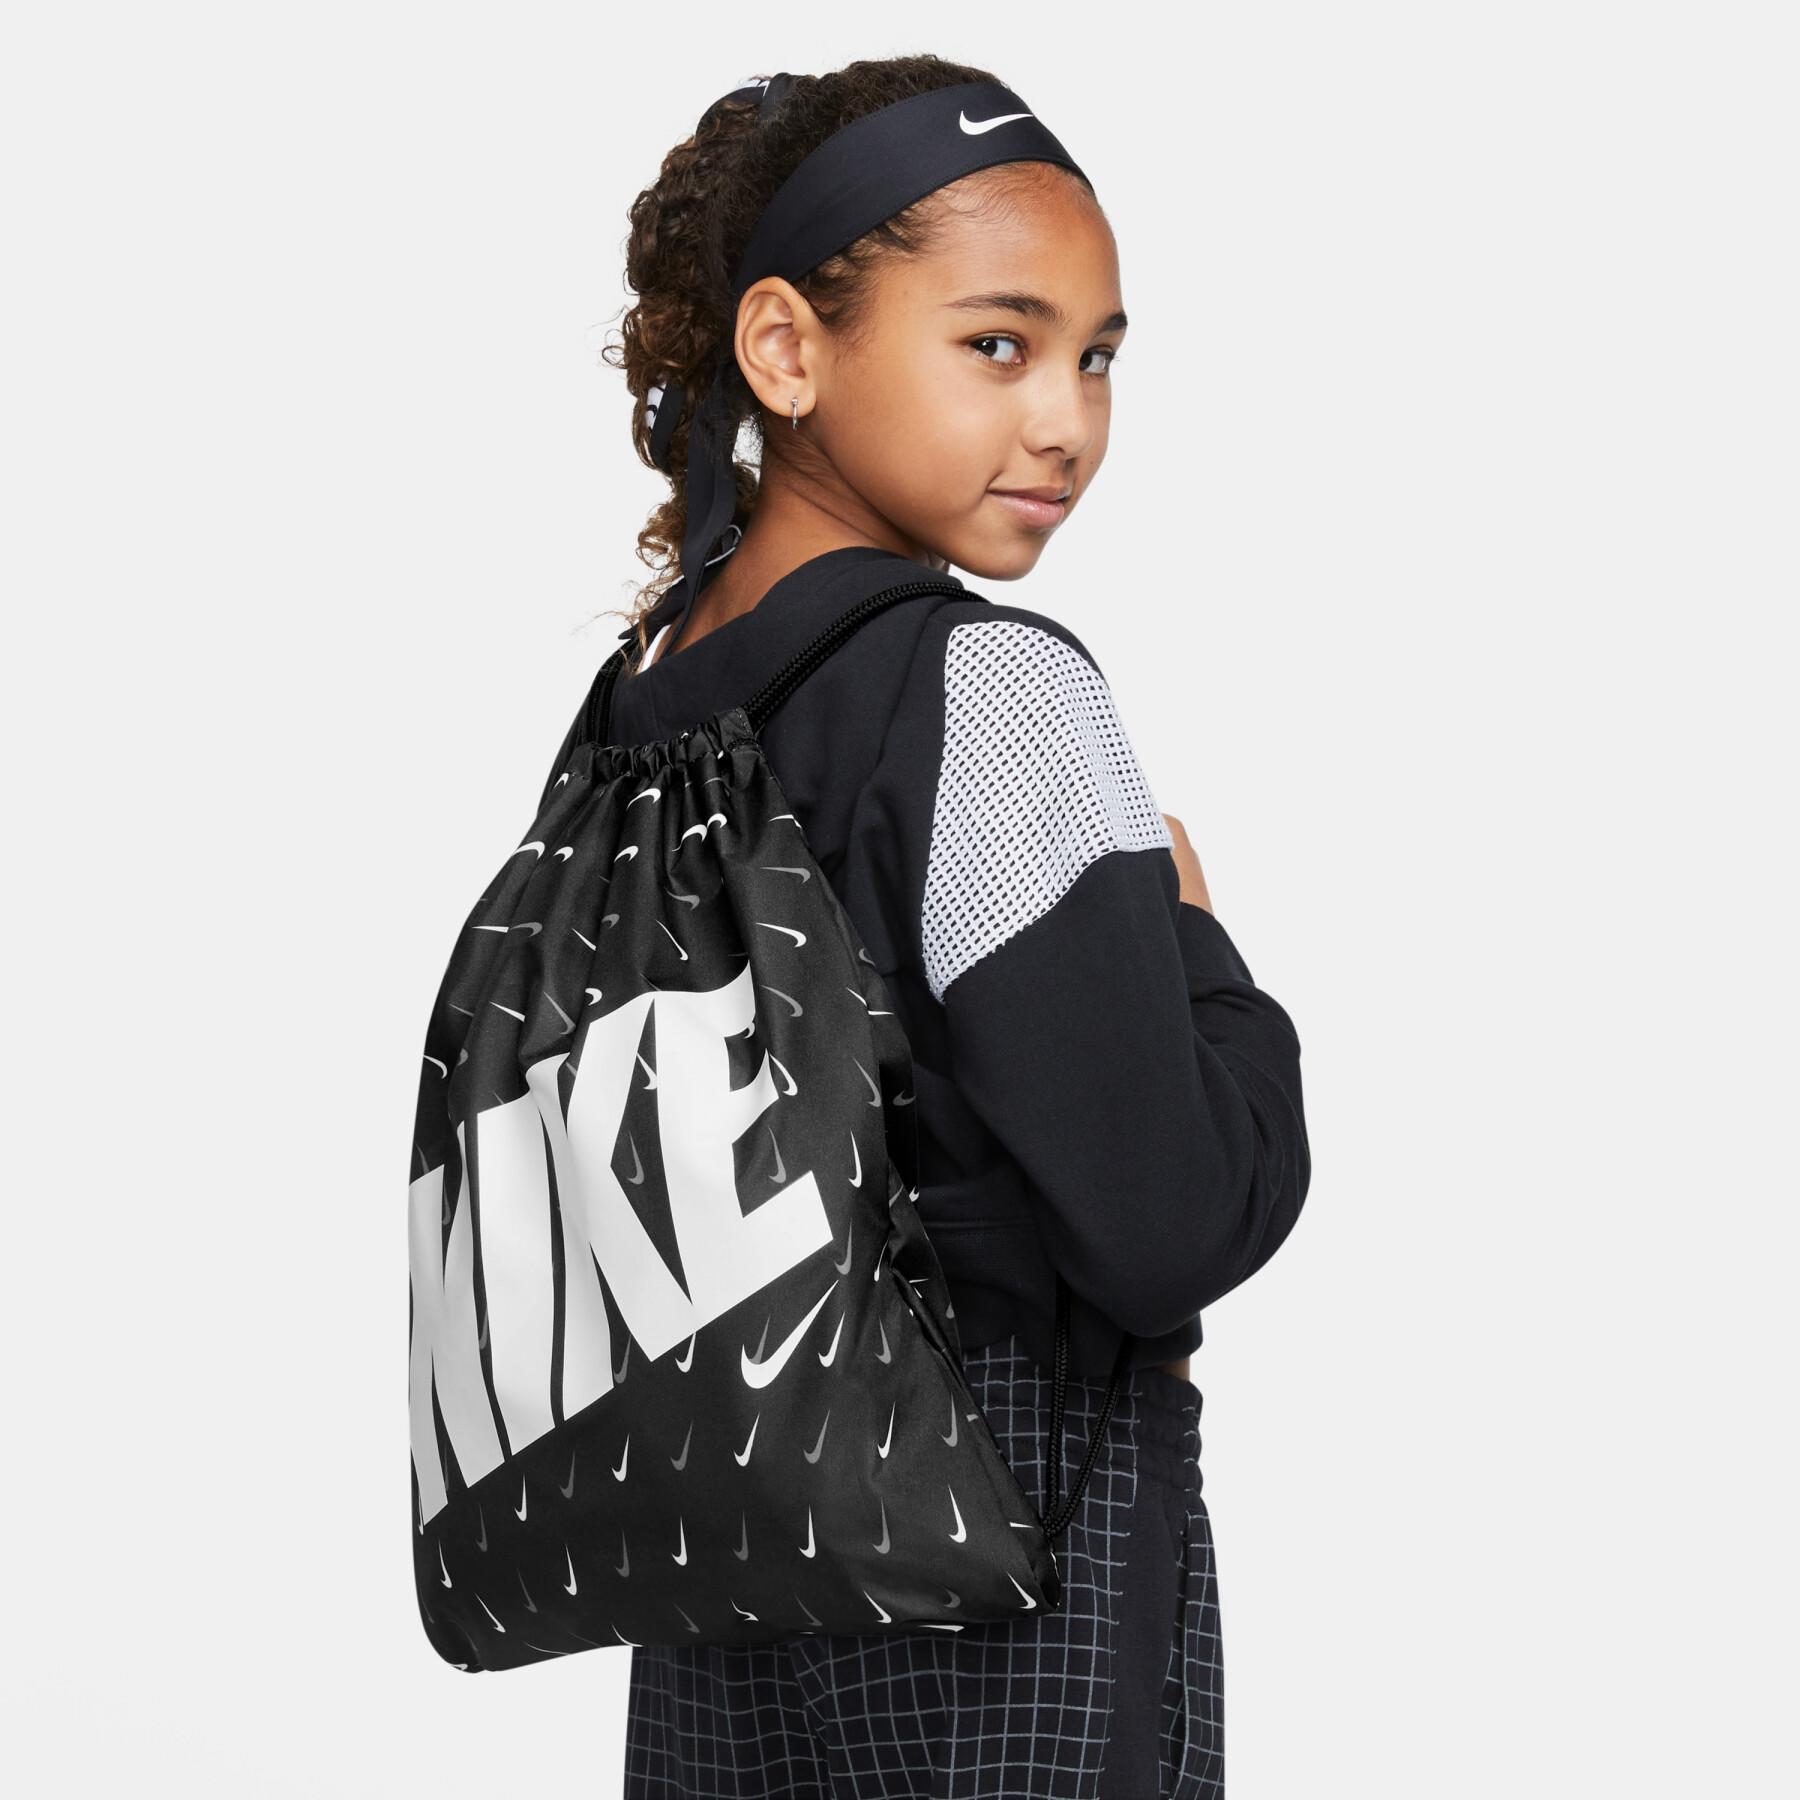 Drawstring bag for children Nike